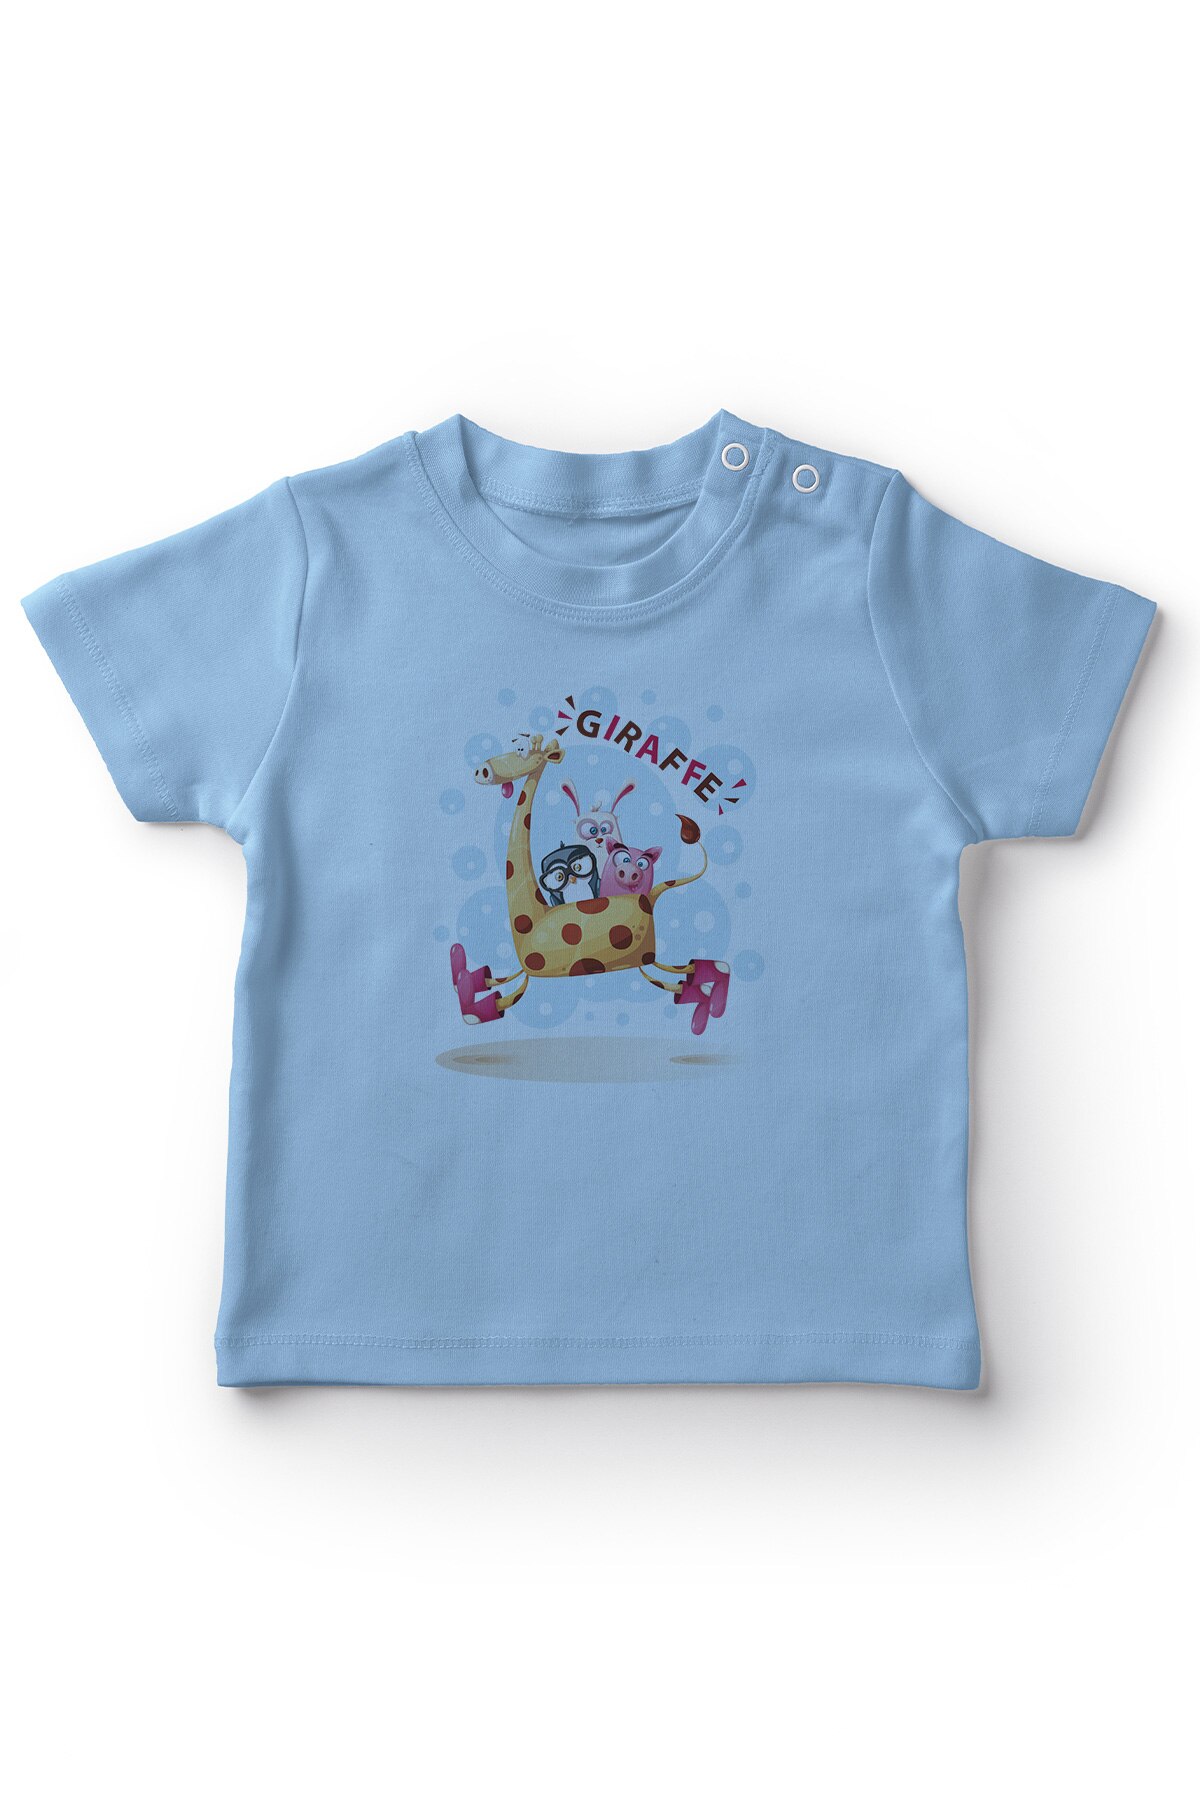 Angemiel Baby Running Op Giraffe Leuke Dieren Jongens Baby T-shirt Blauw